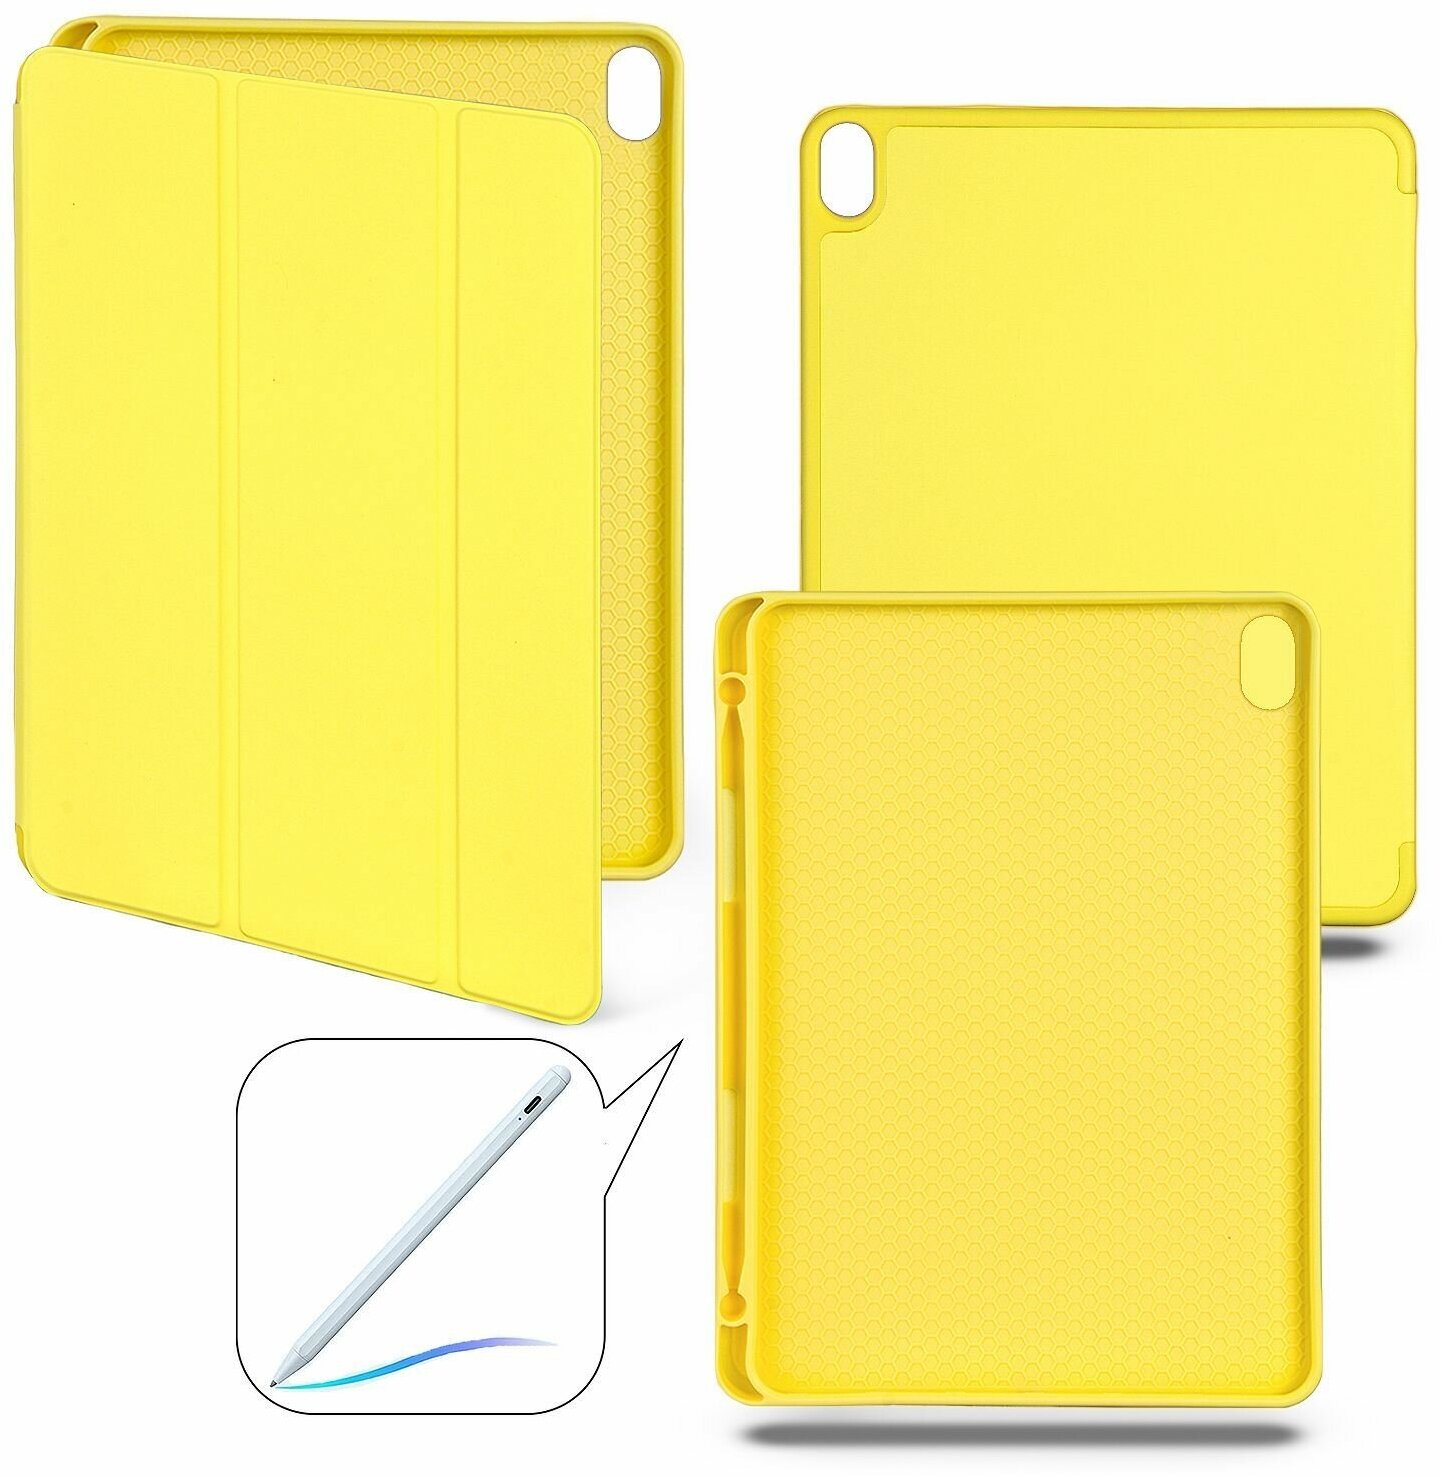 Чехол-книжка для iPad Air 4 (10.9", 2020) / iPad Air 5 (10.9", 2022) с отделением для стилуса, желтый